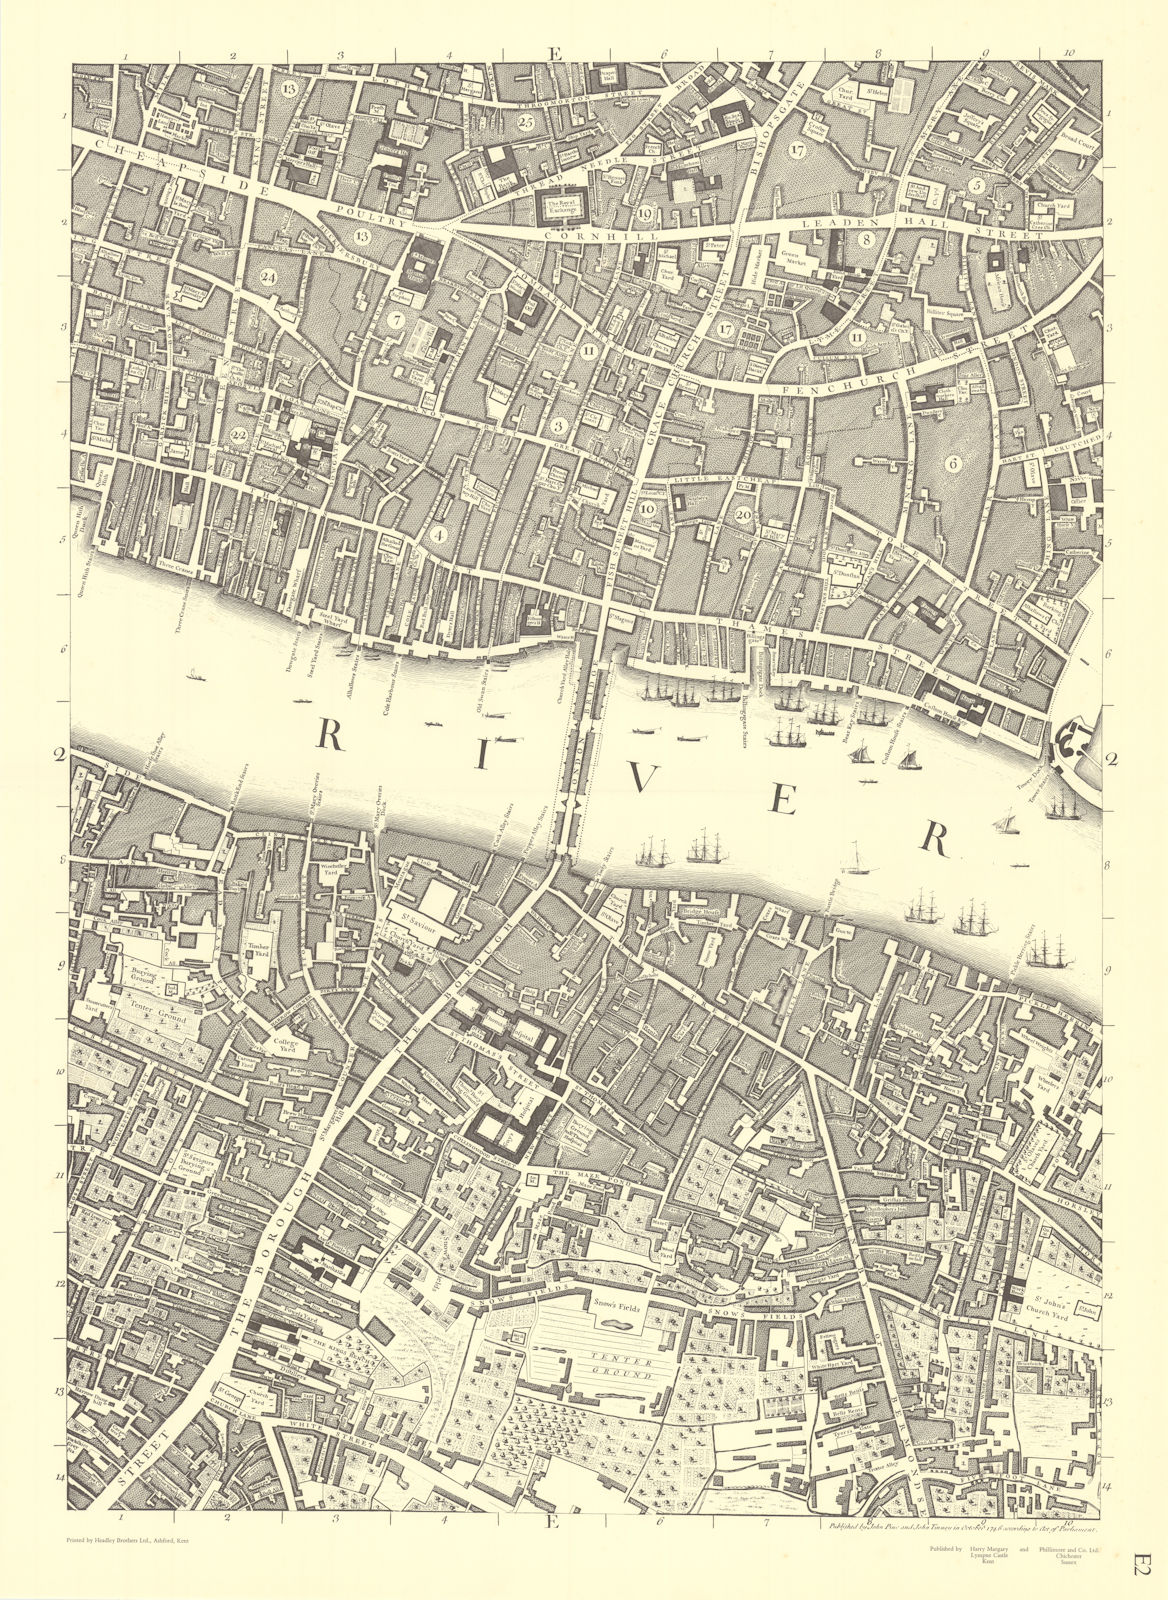 City of London Bridge Bank Southwark Borough. E2. After ROCQUE 1971 (1746) map